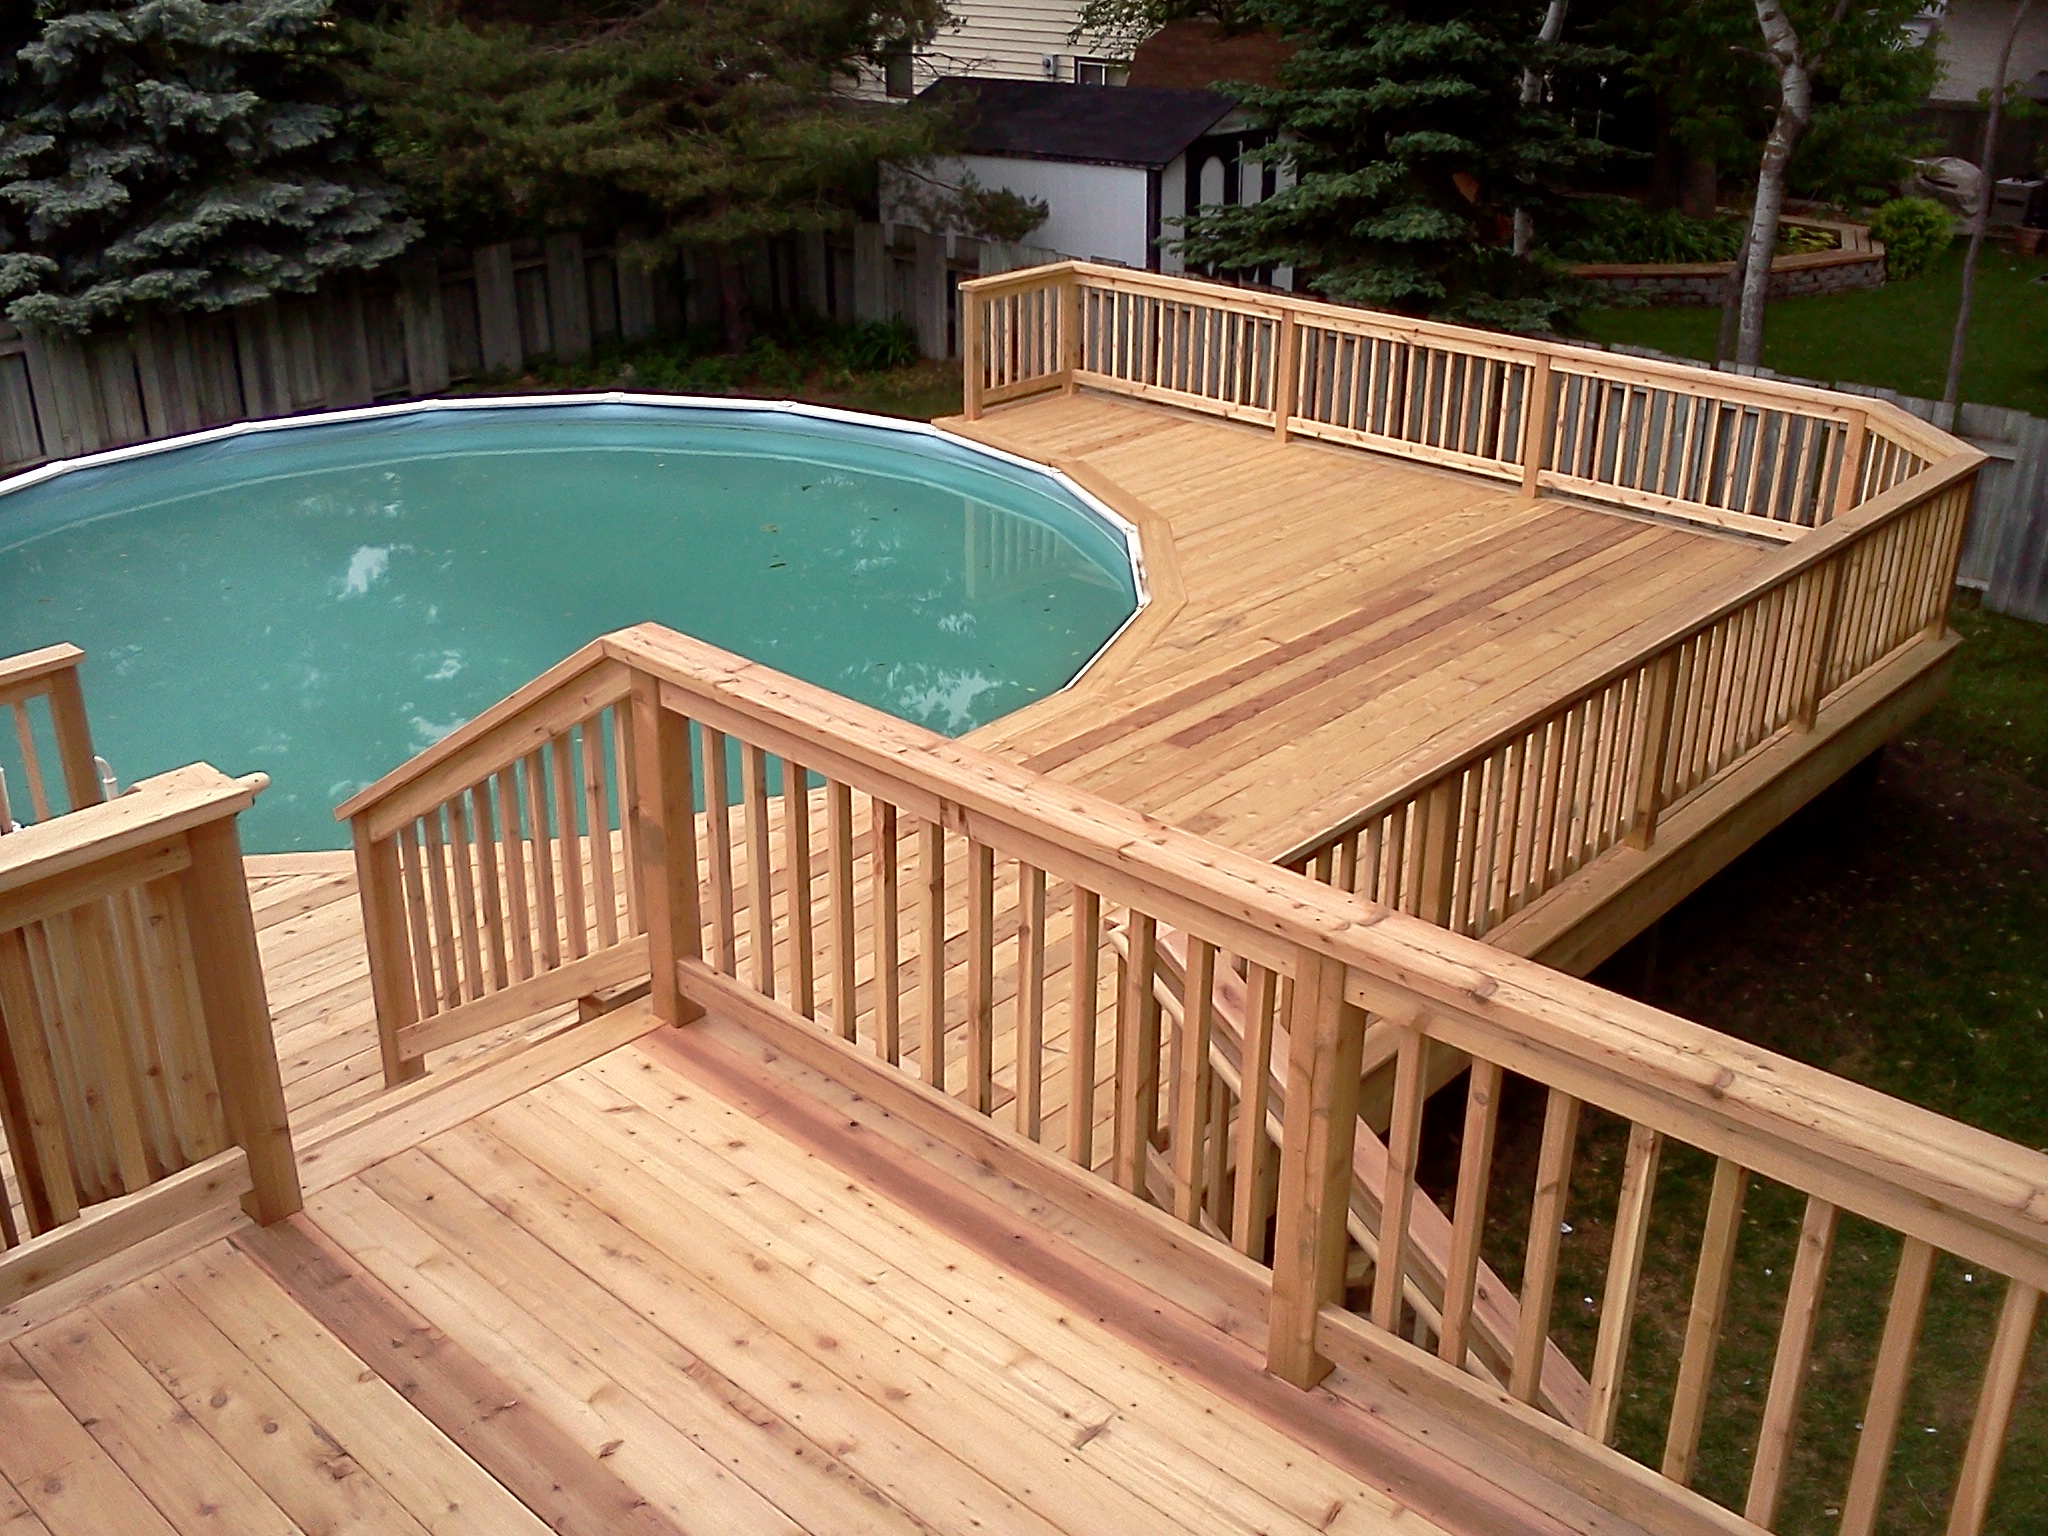 Деревянная терраса вокруг бассейна: проект деревянной террасы, подготовительные этапы и укладки своими руками